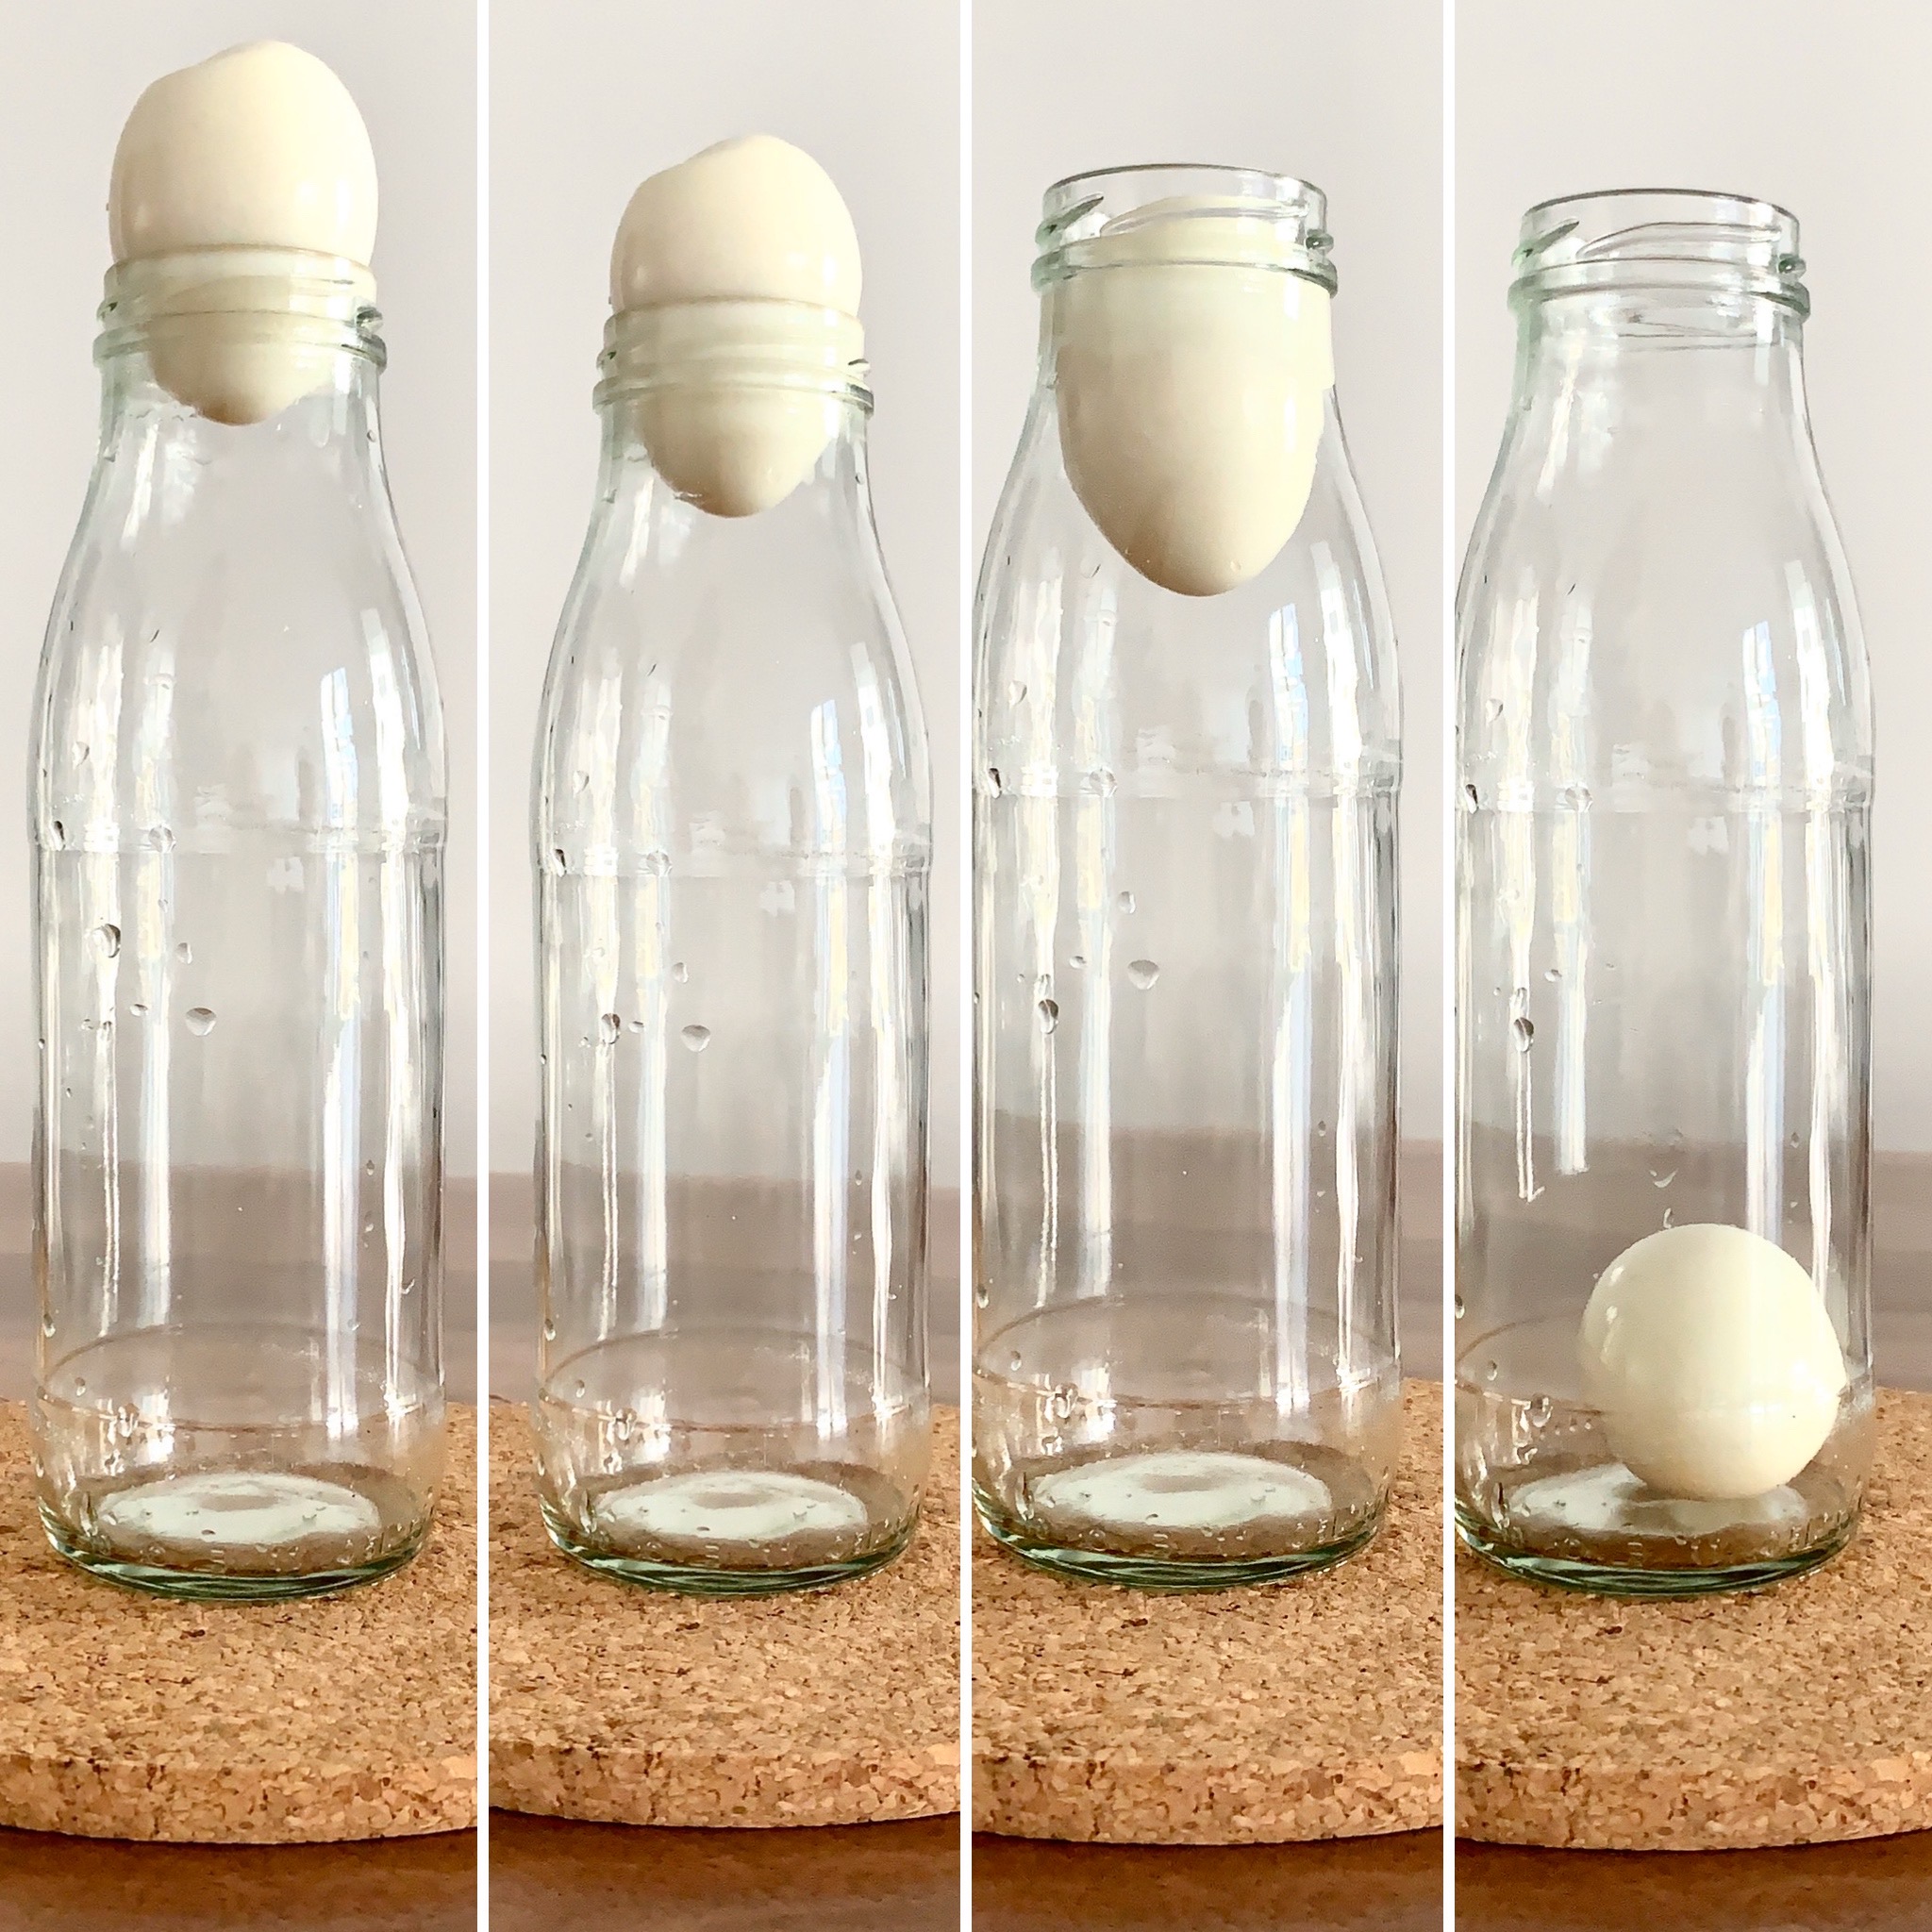 SCHNELL GEFORSCHT: Ei in die Flasche zaubern – Forschen & bloggen für Kinder